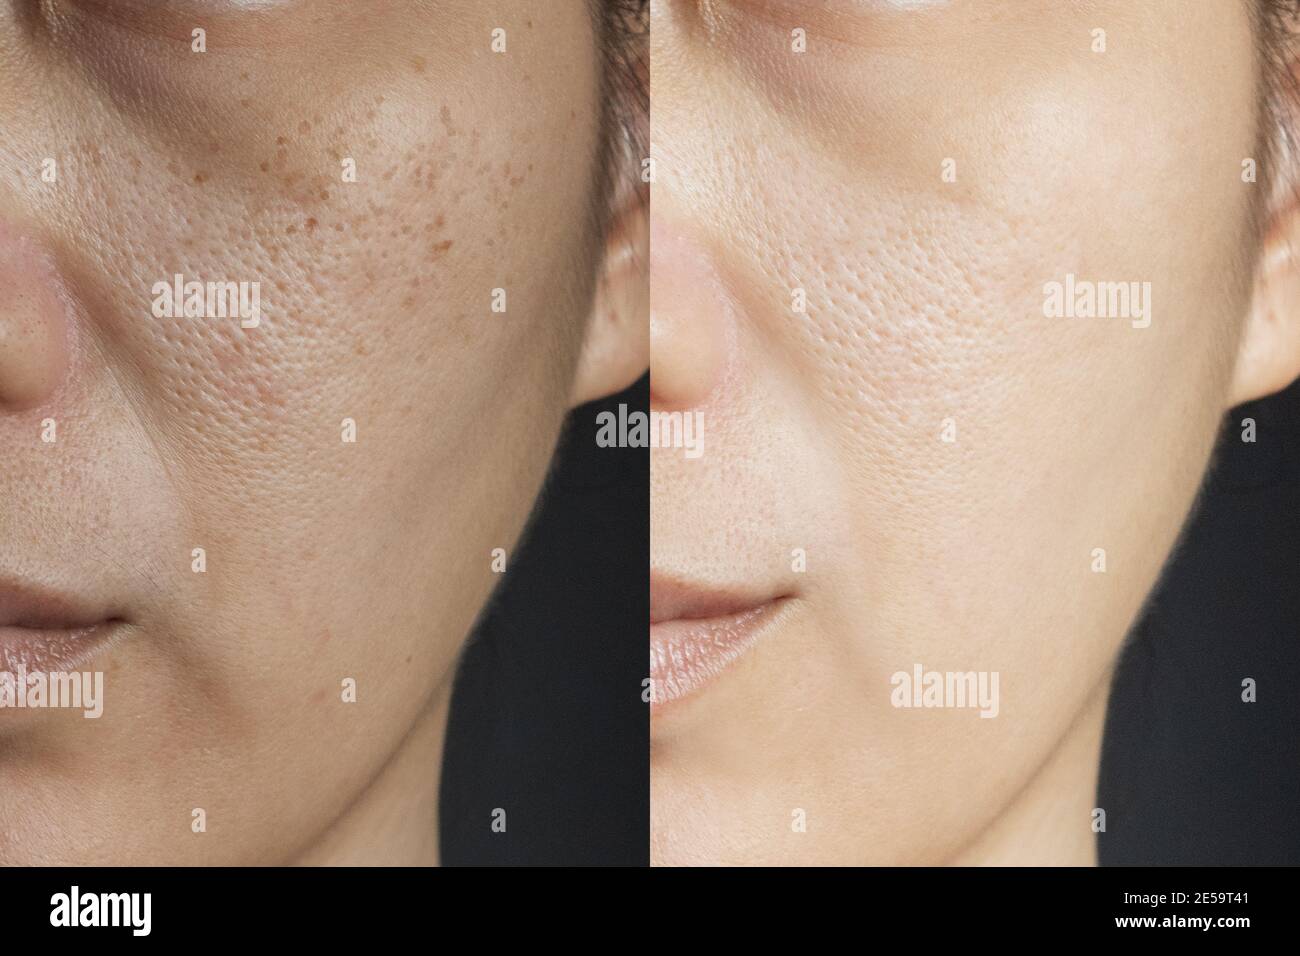 Dos imágenes comparan el efecto antes y después del tratamiento. Piel con problemas de pecas, poros, piel apagada y arrugas antes y después del tratamiento Foto de stock